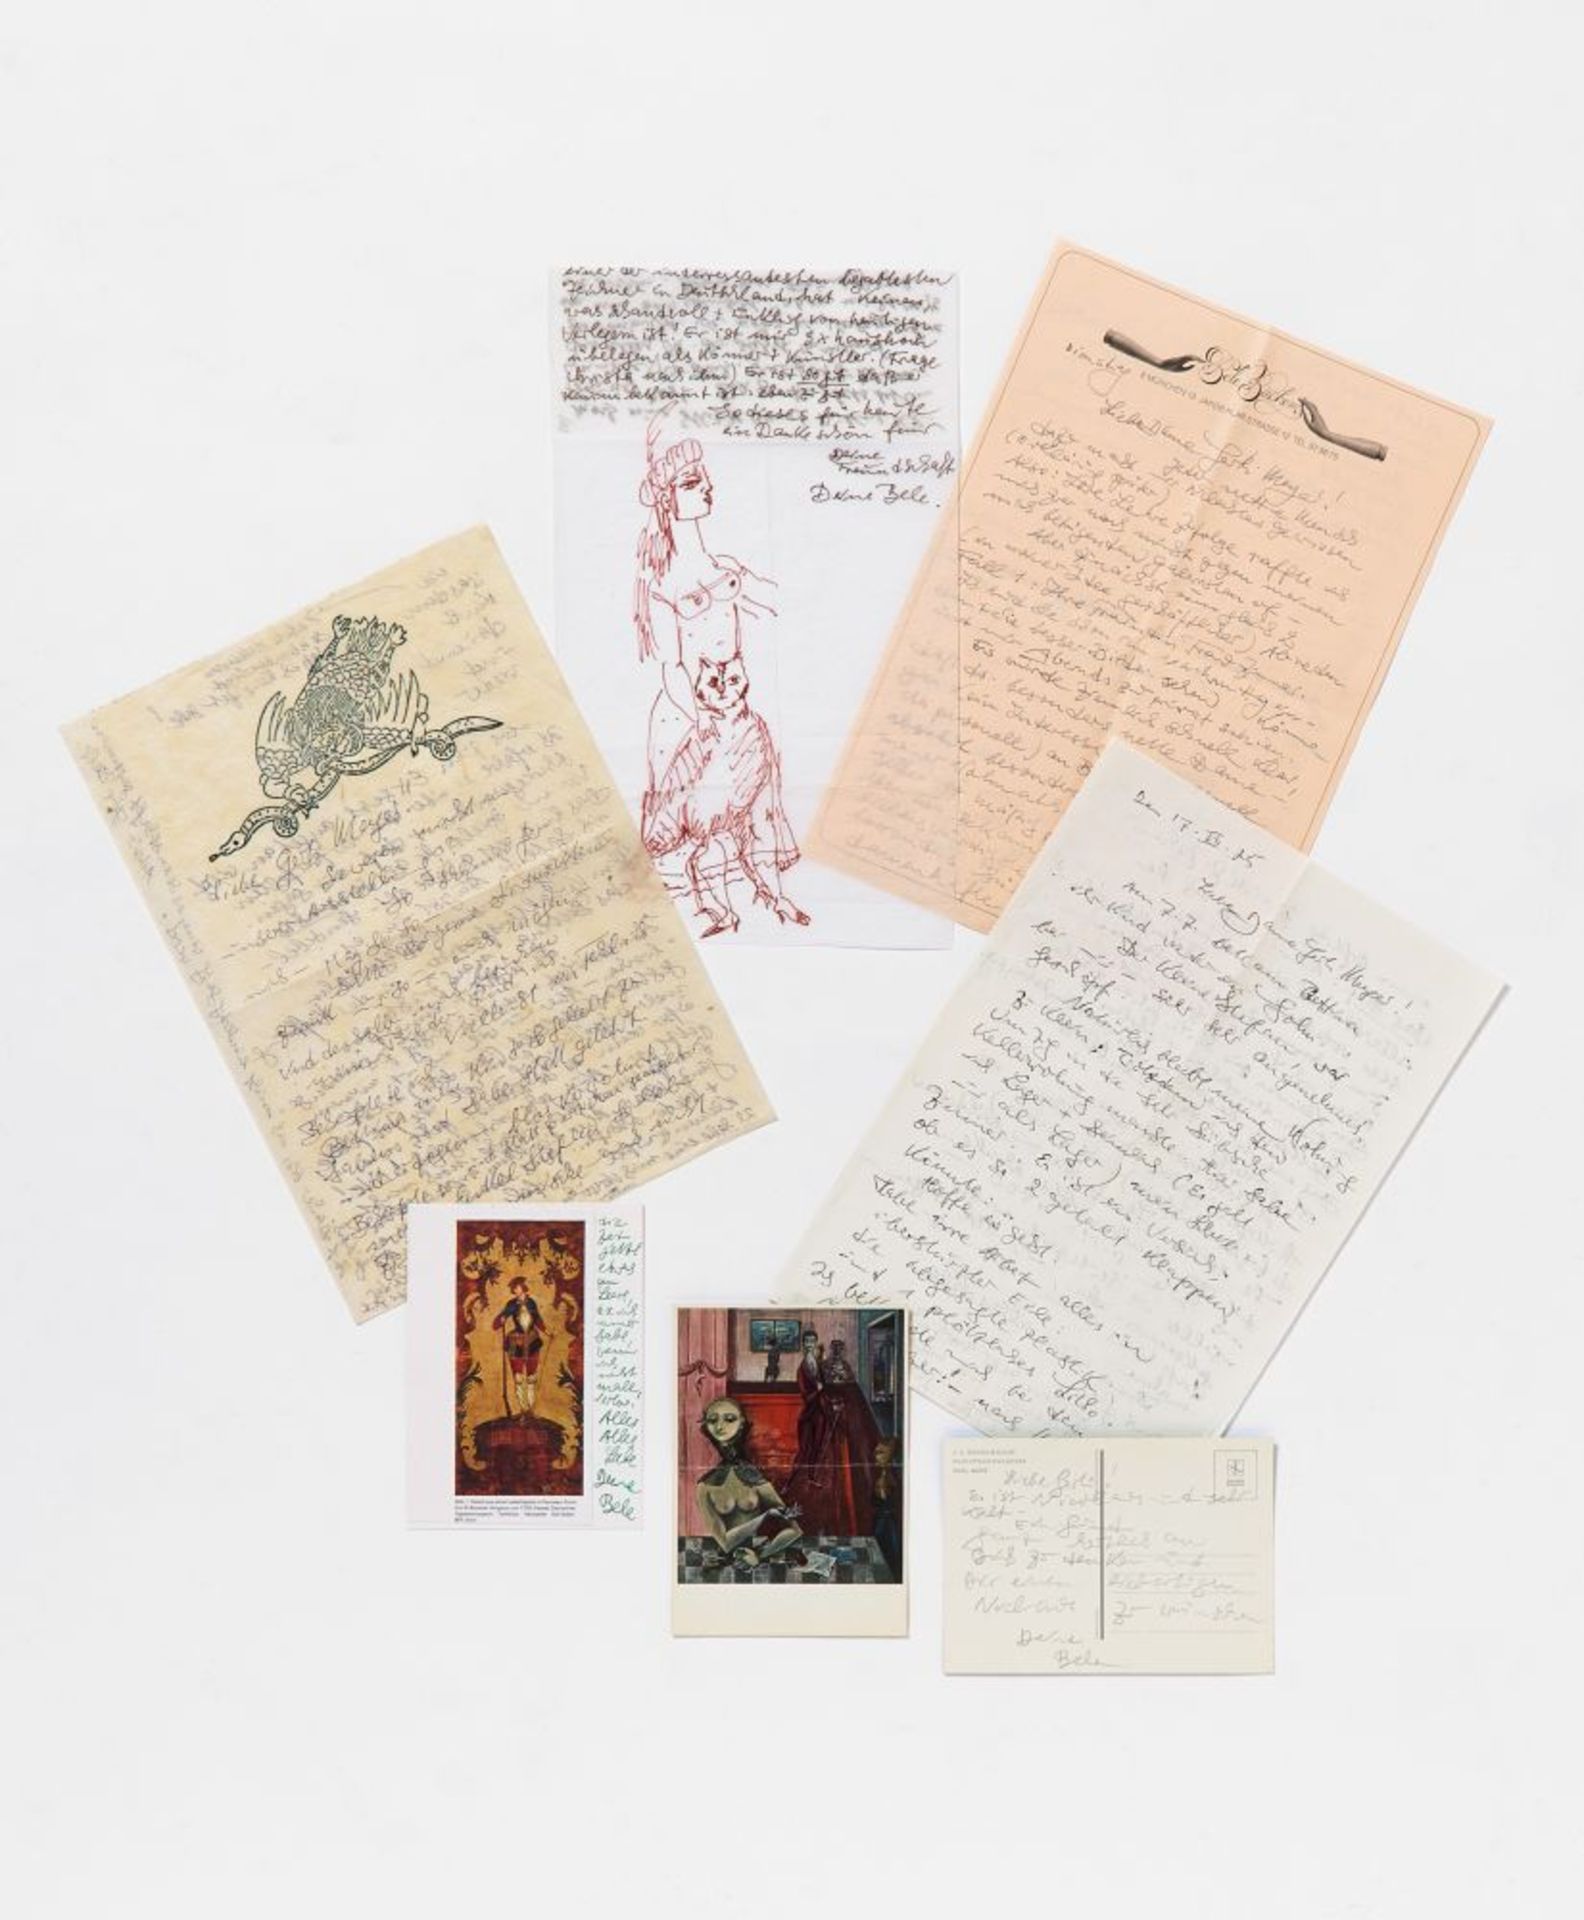 Bele Bachem, 40 eigh. Briefe, Karten, t. mit Zeichnungen. Von ca. 1974 bis um 2003. - An Gertrude Me - Bild 3 aus 12